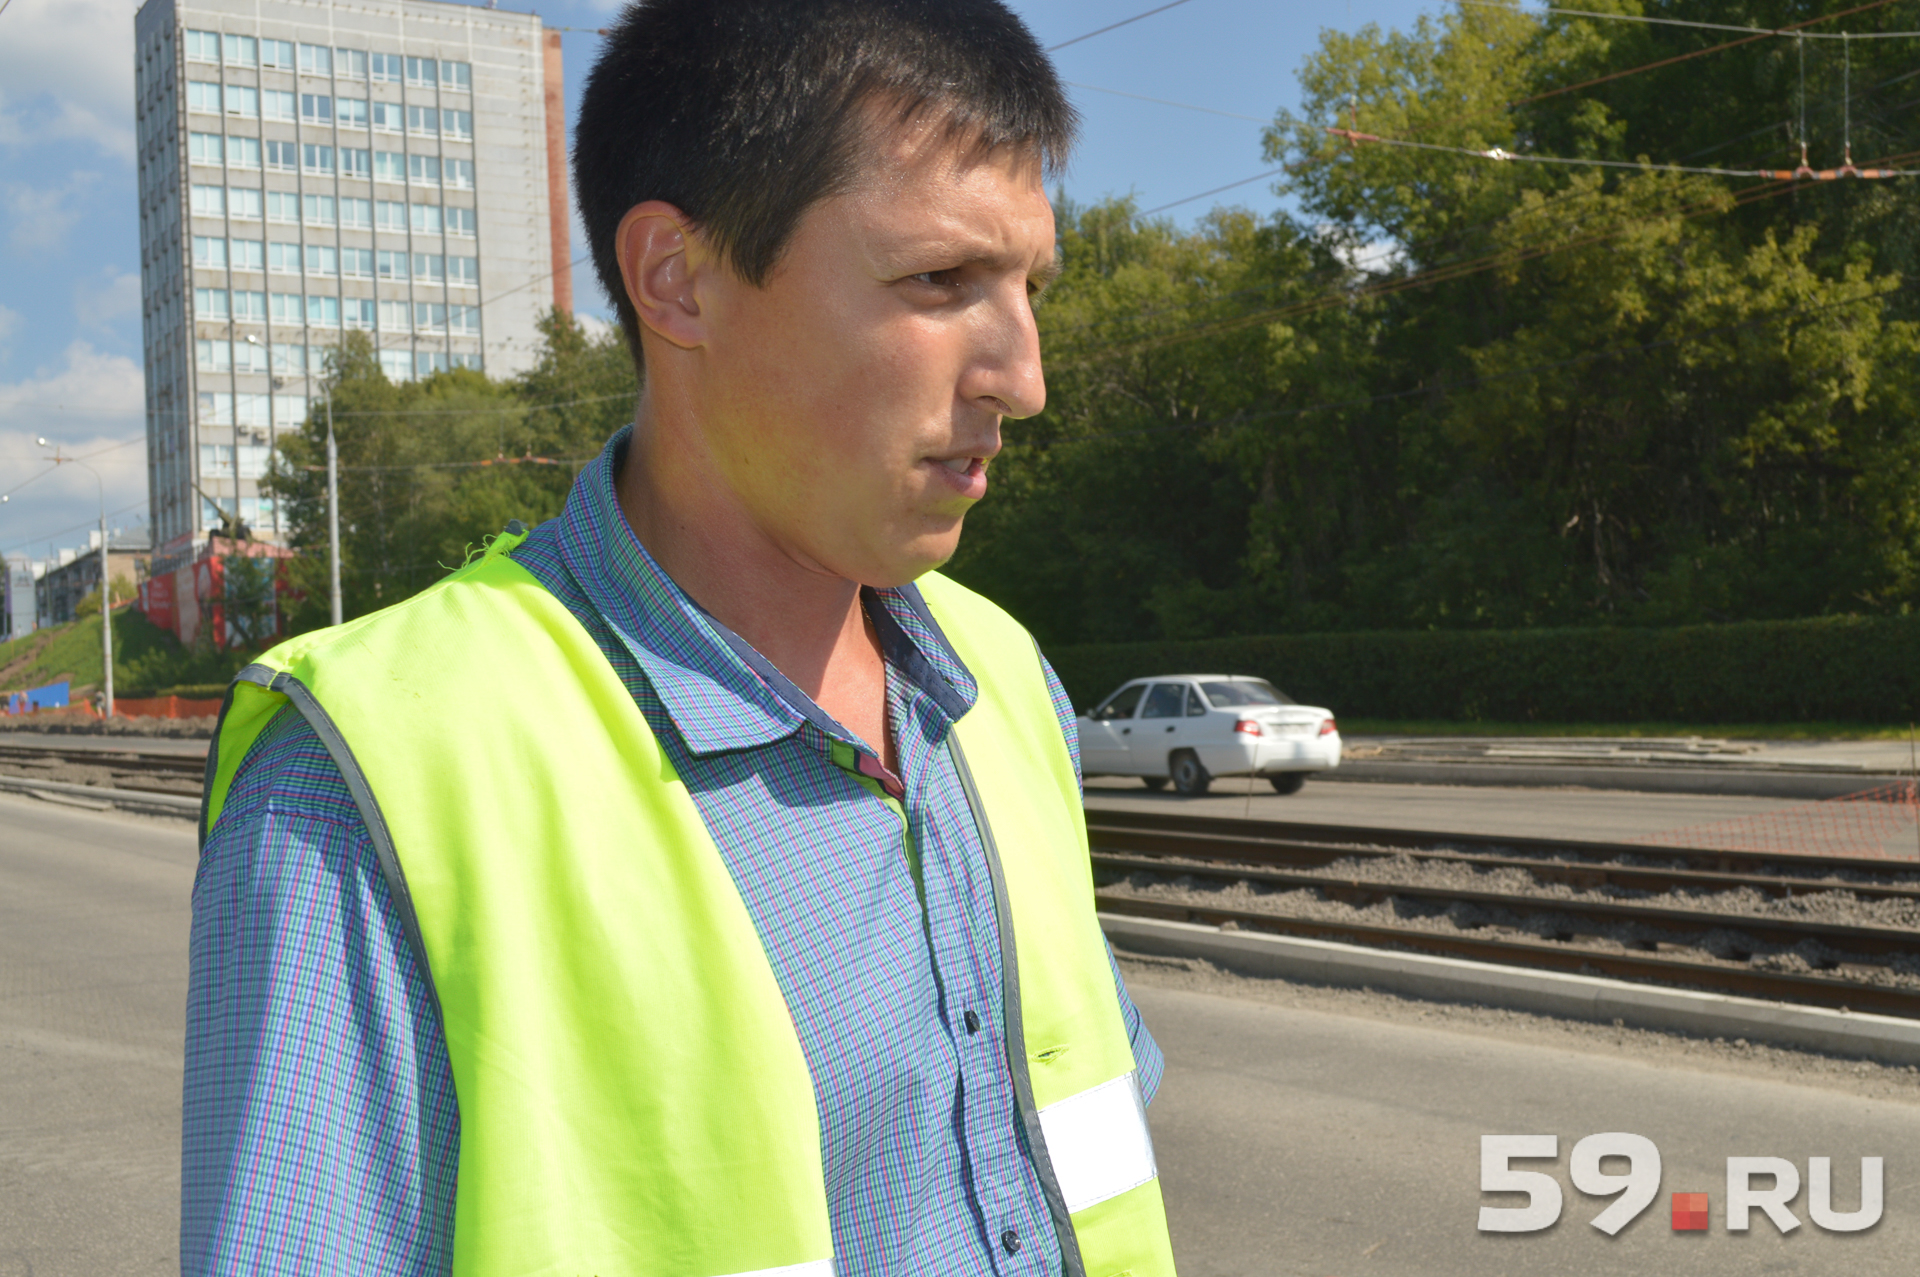 Андрей Кармышев вместе с коллегой проверяет асфальт по всему городу